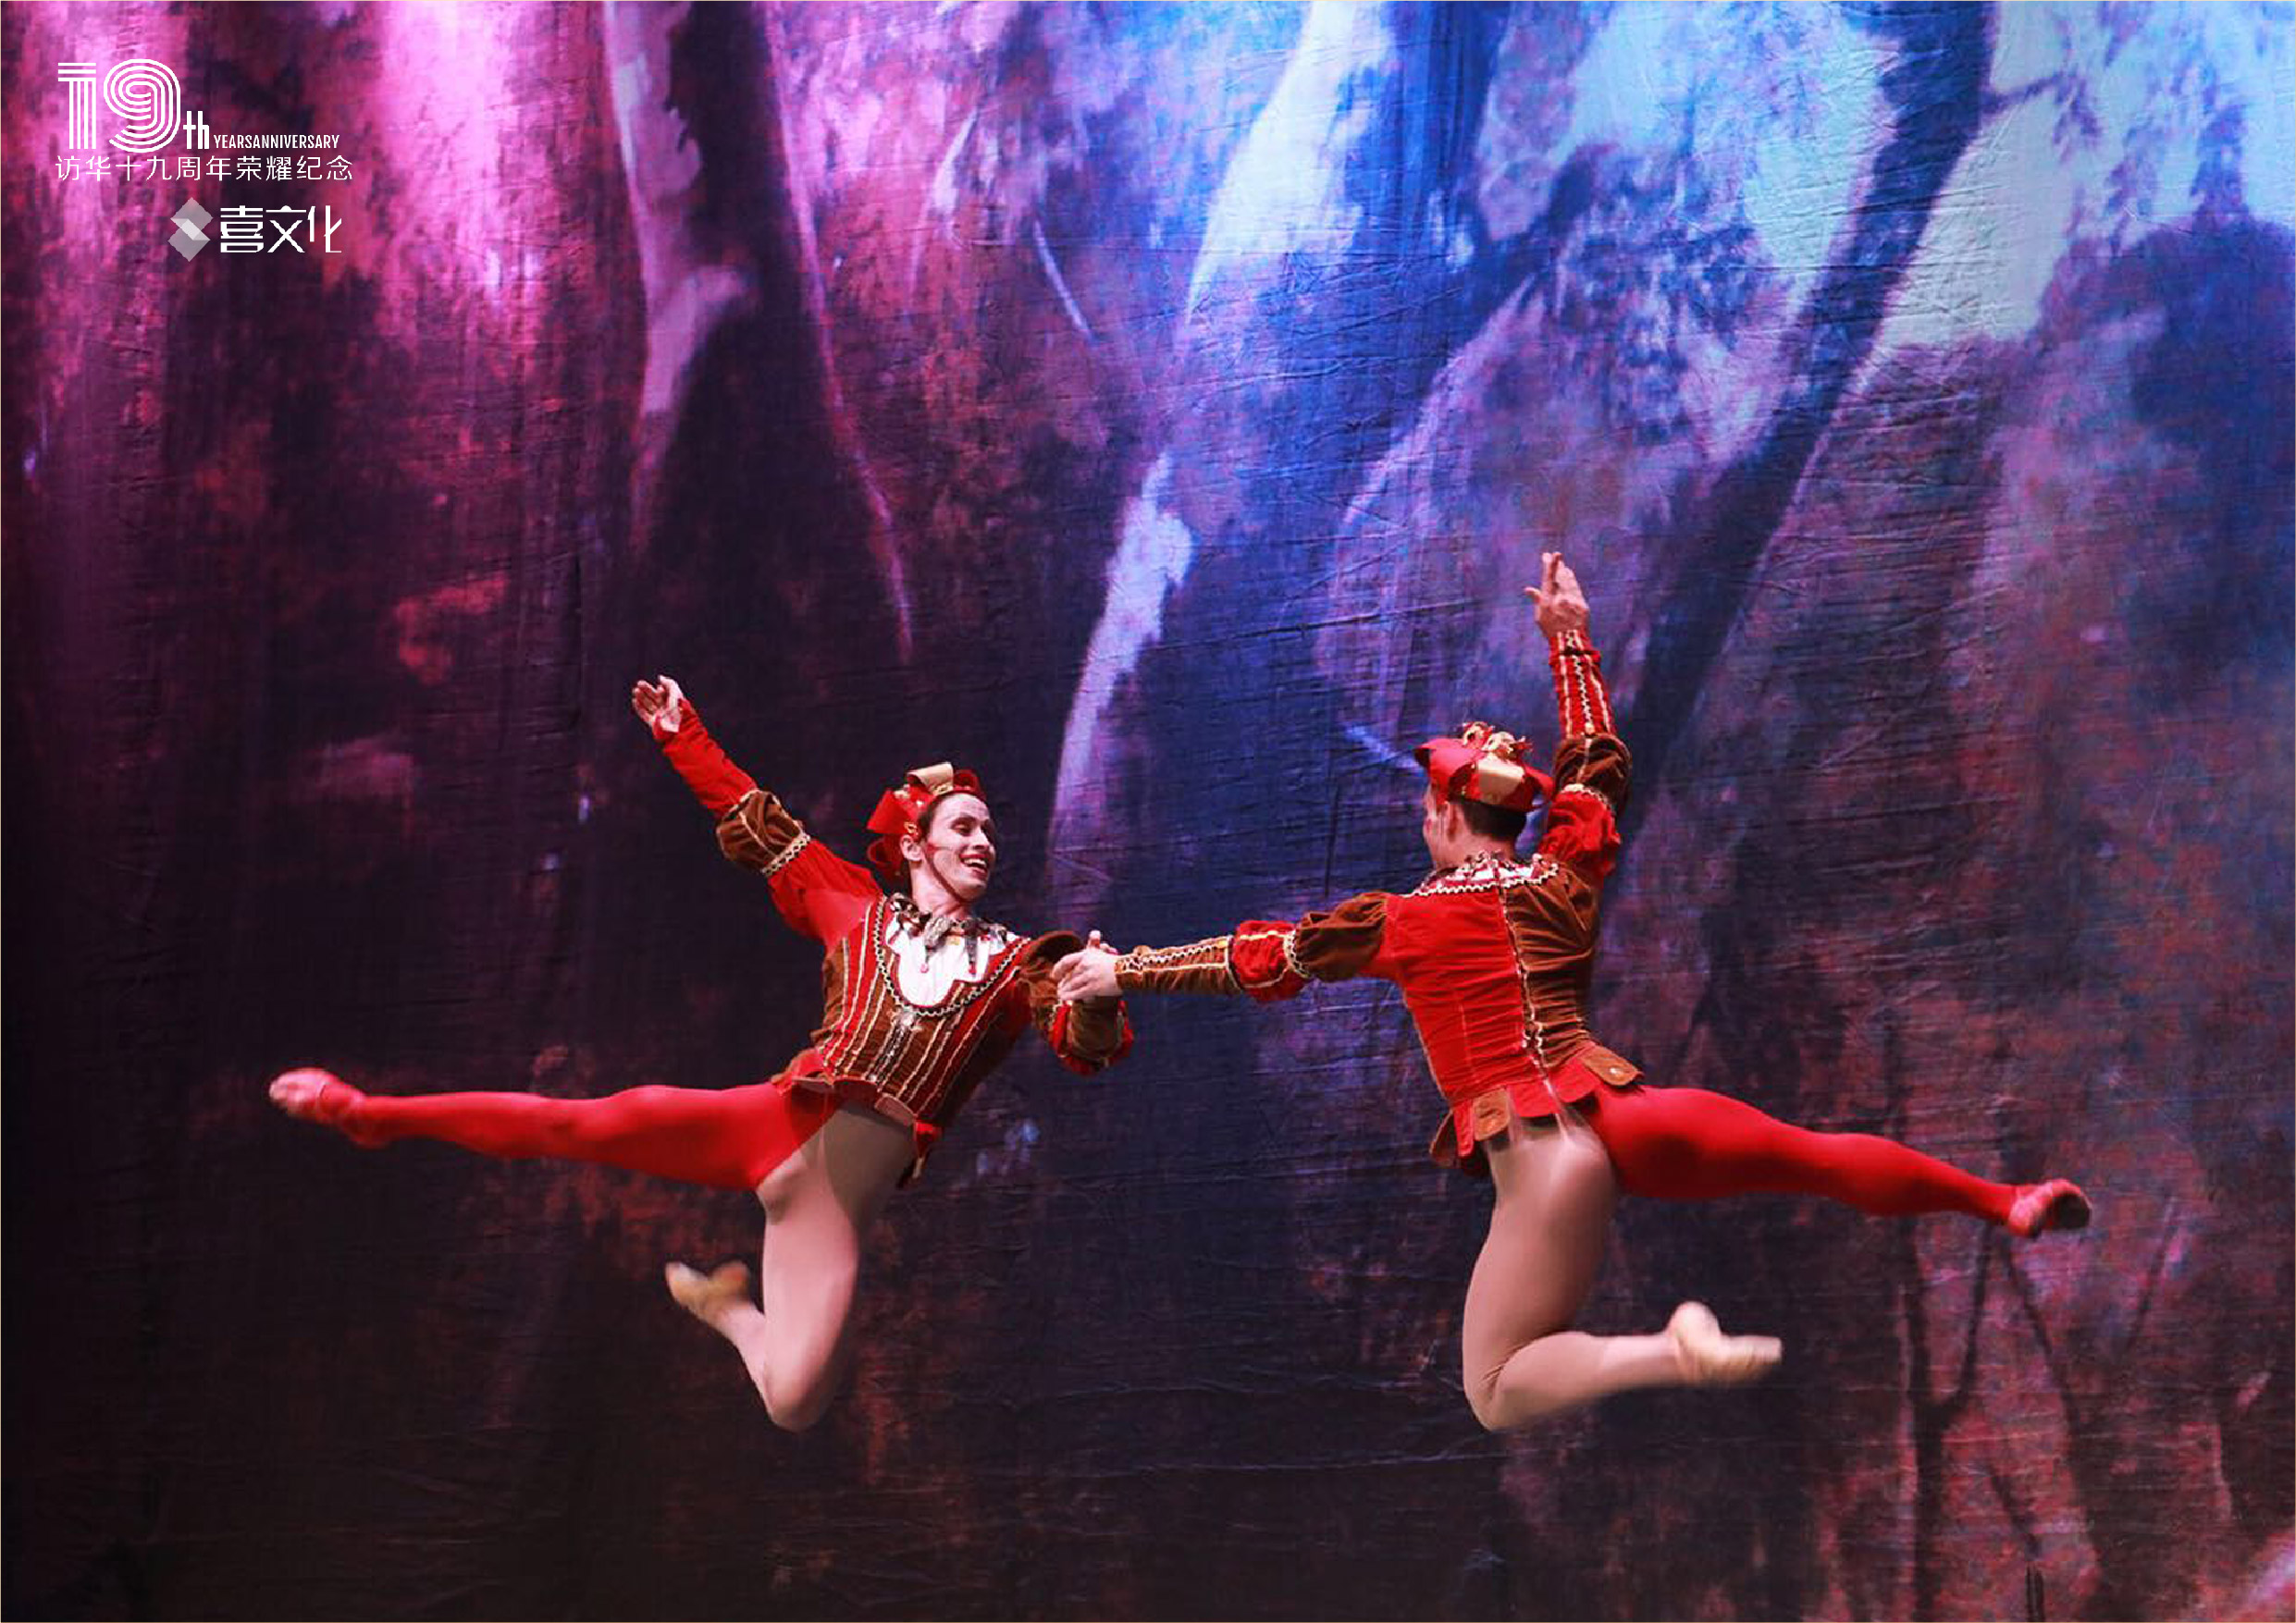 连续访华19周年品质纪念—俄罗斯皇家芭蕾舞团《天鹅湖》2019中国巡演·苏州站